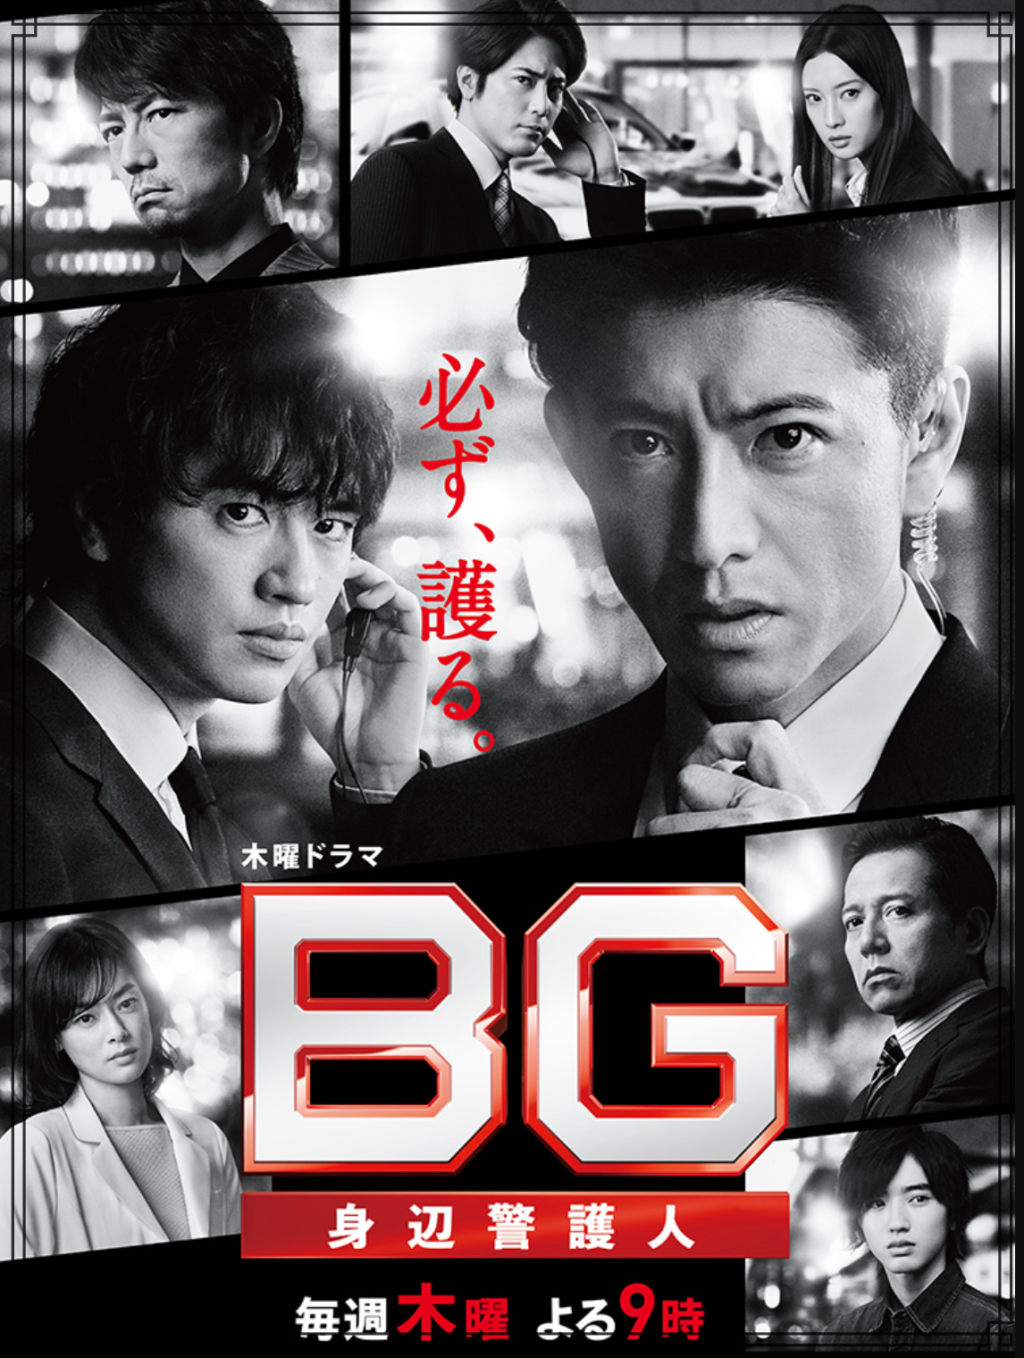 テレビドラマ『BG』